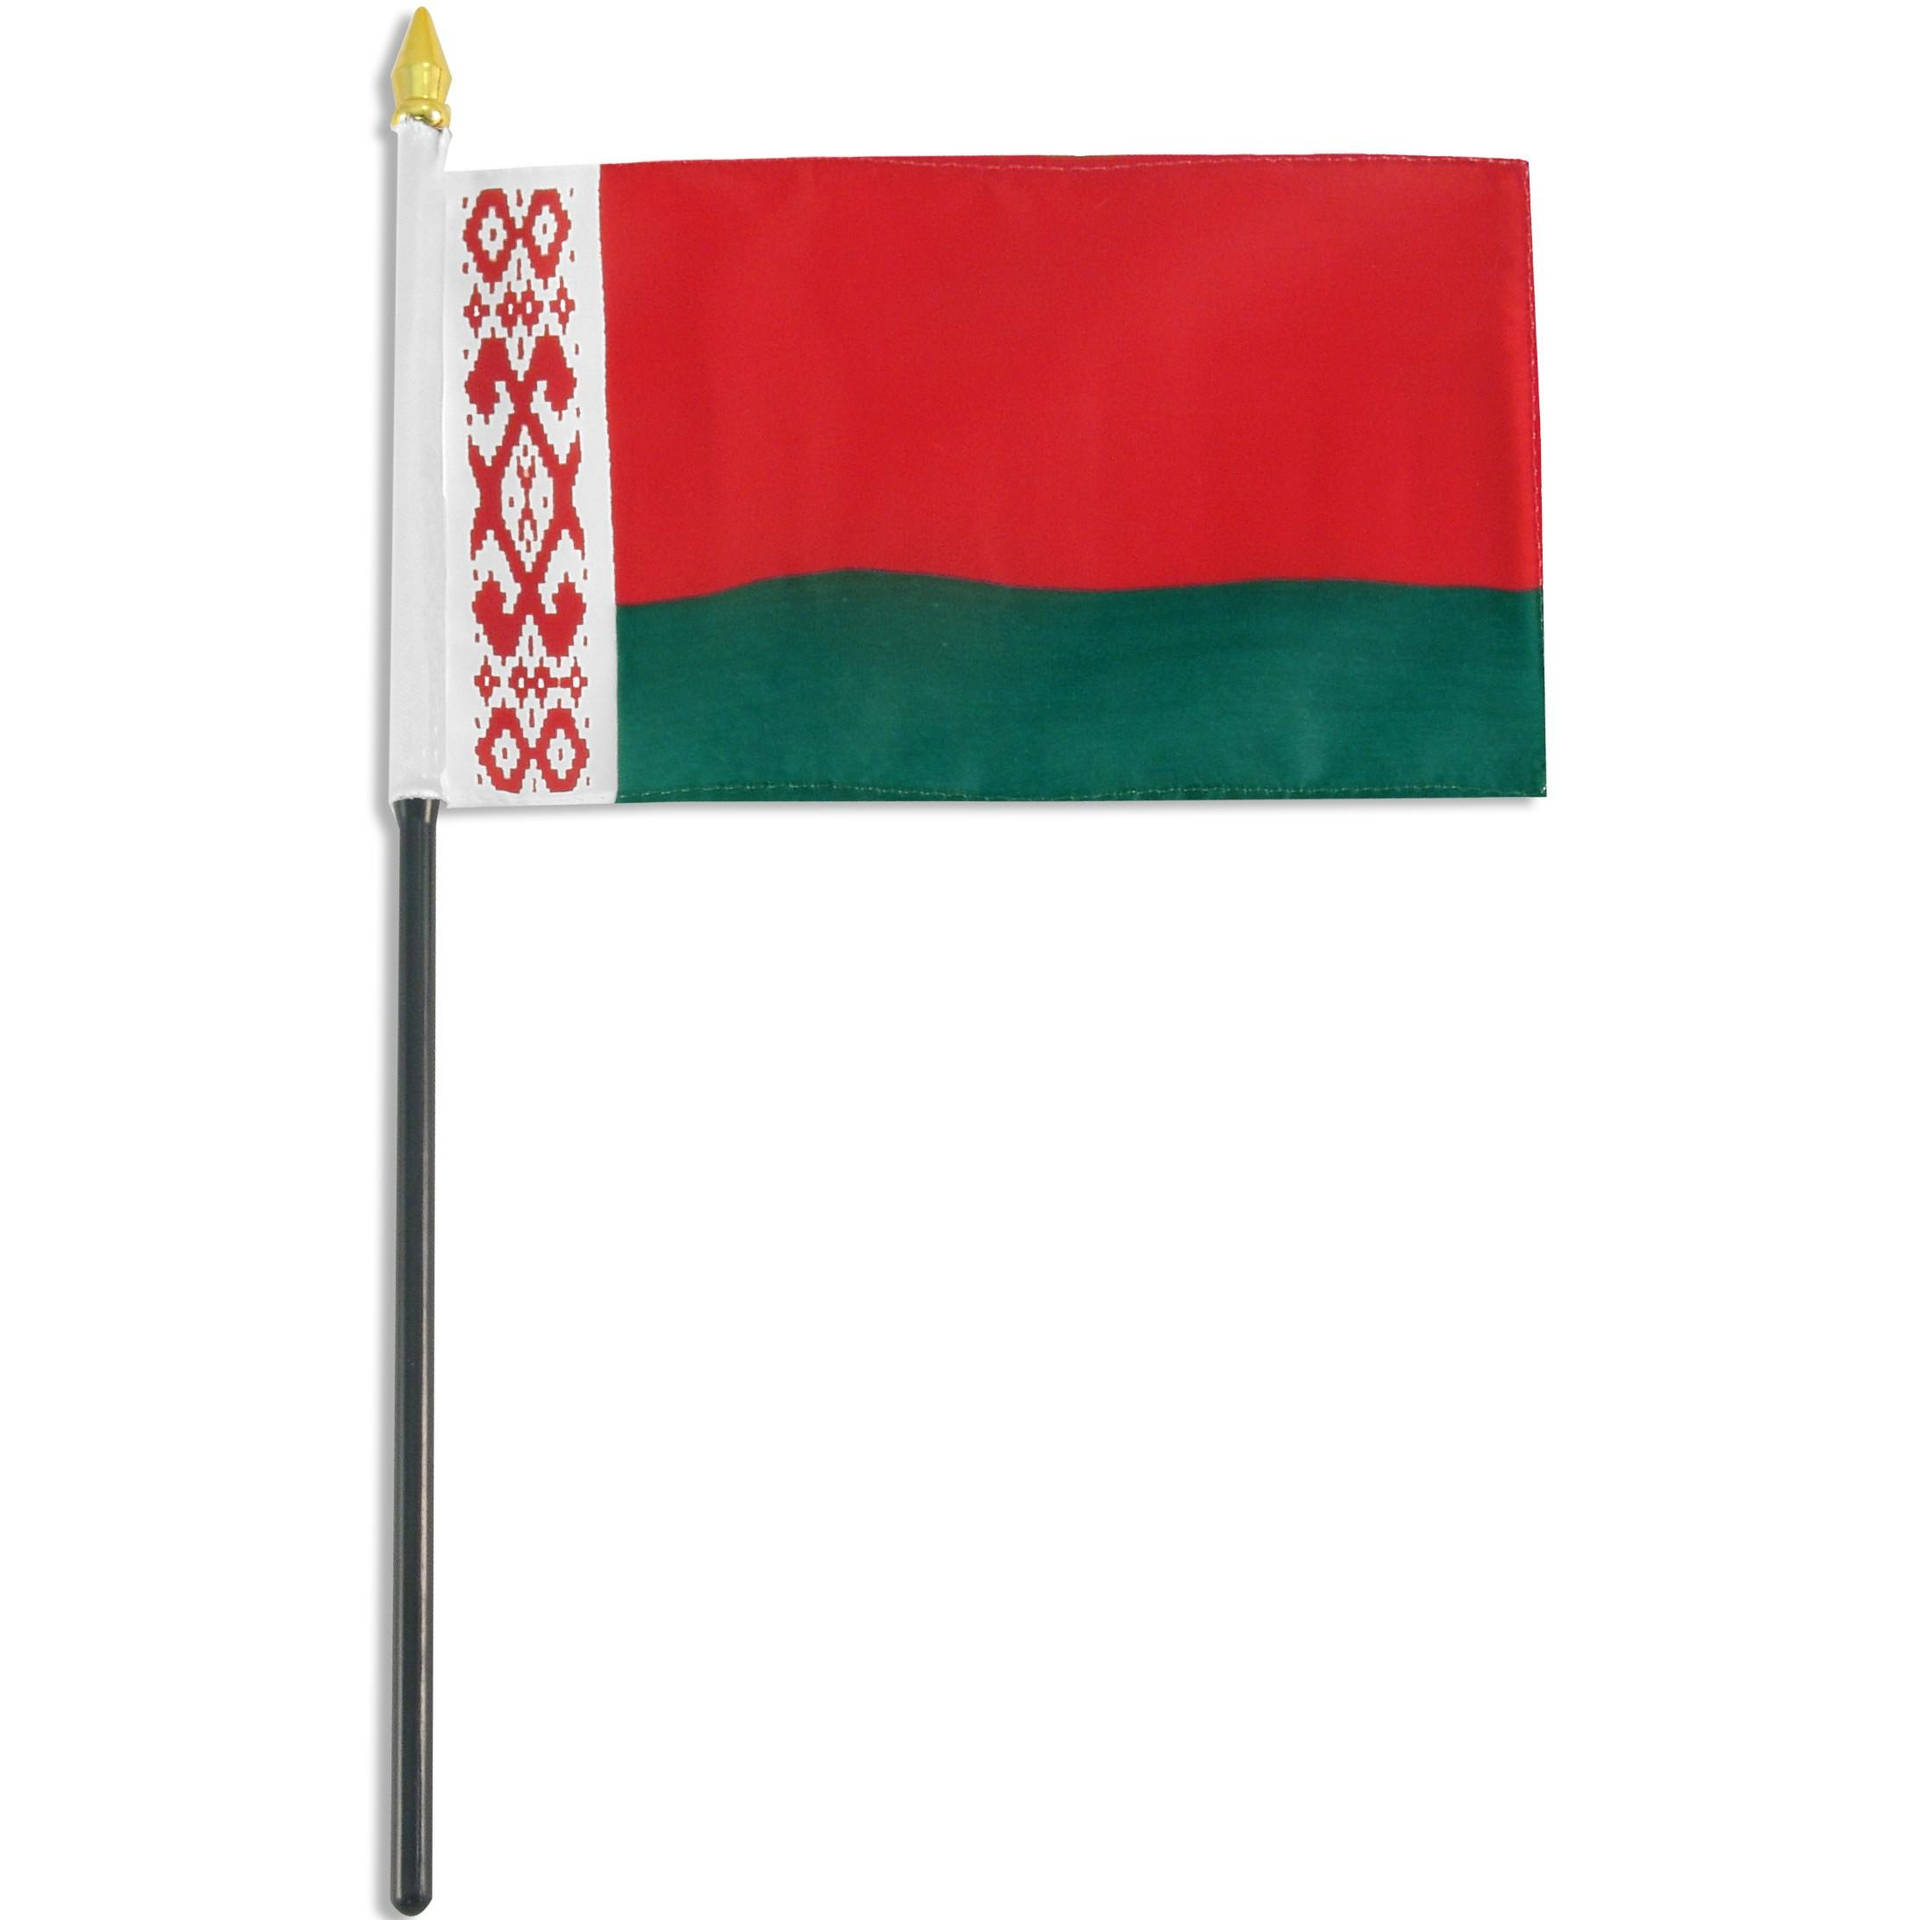 Belarus Flagpole Background